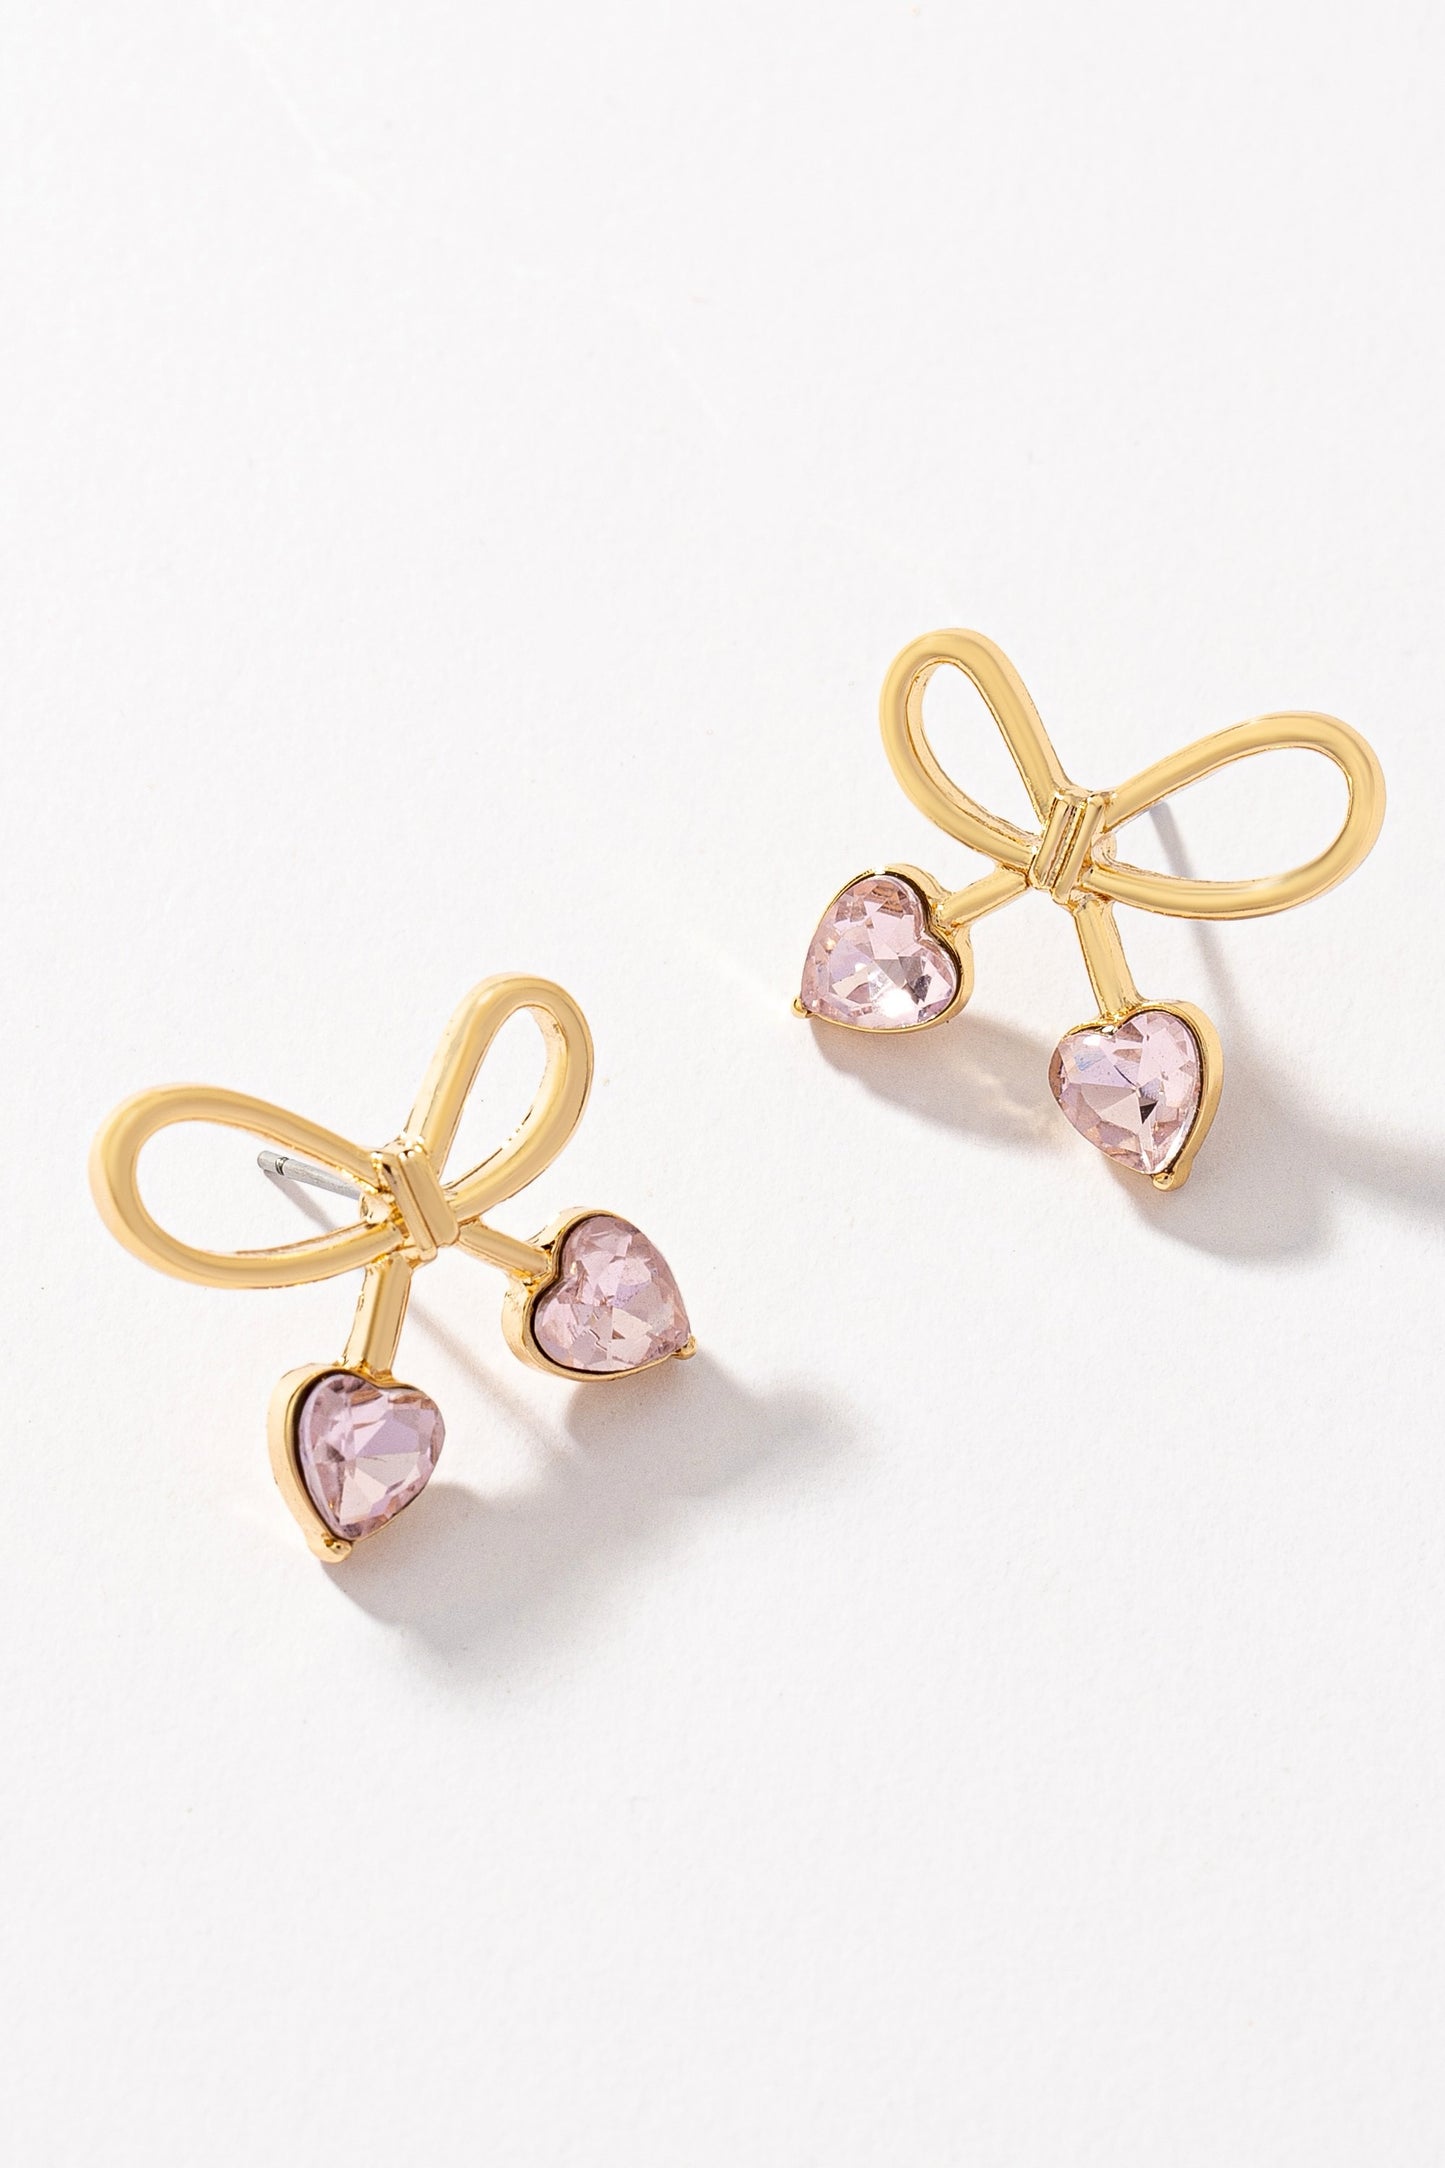 Pink Crystal Bow Tie Earrings